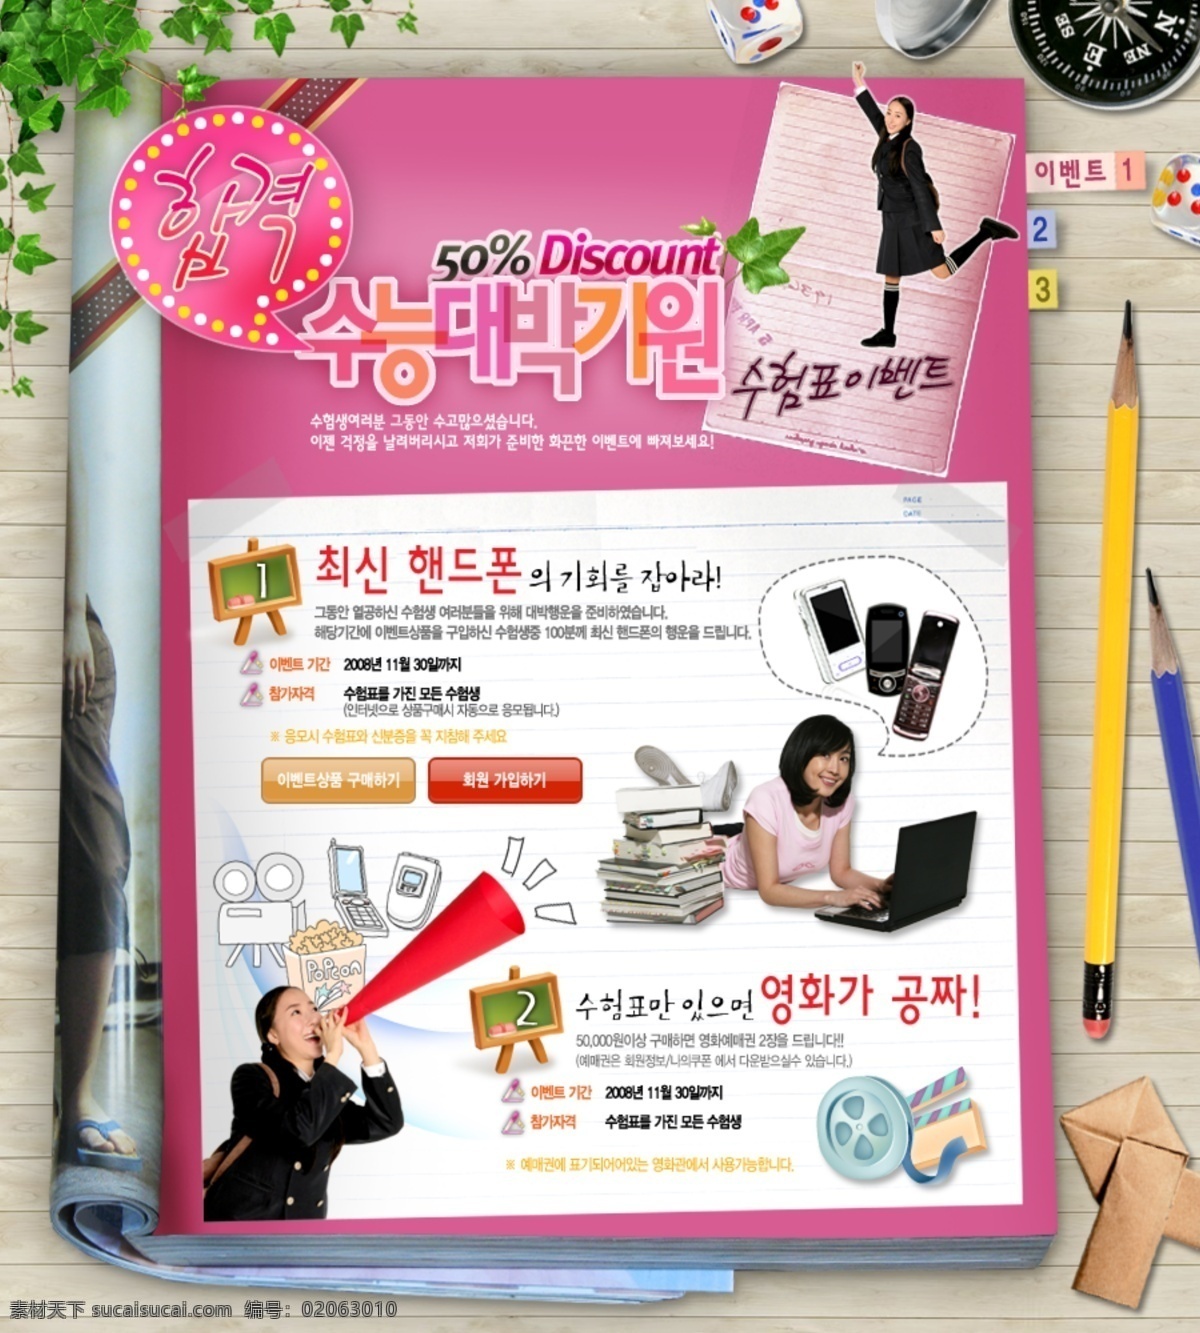 淘宝 卡通 可爱 风格 促销 模版 笔记本 表 促销模版 韩文字体 可爱风格 可爱卡通图标 绿色植物 铅笔 手机 书籍 淘宝卡通 活泼女生 杂志 app app图标